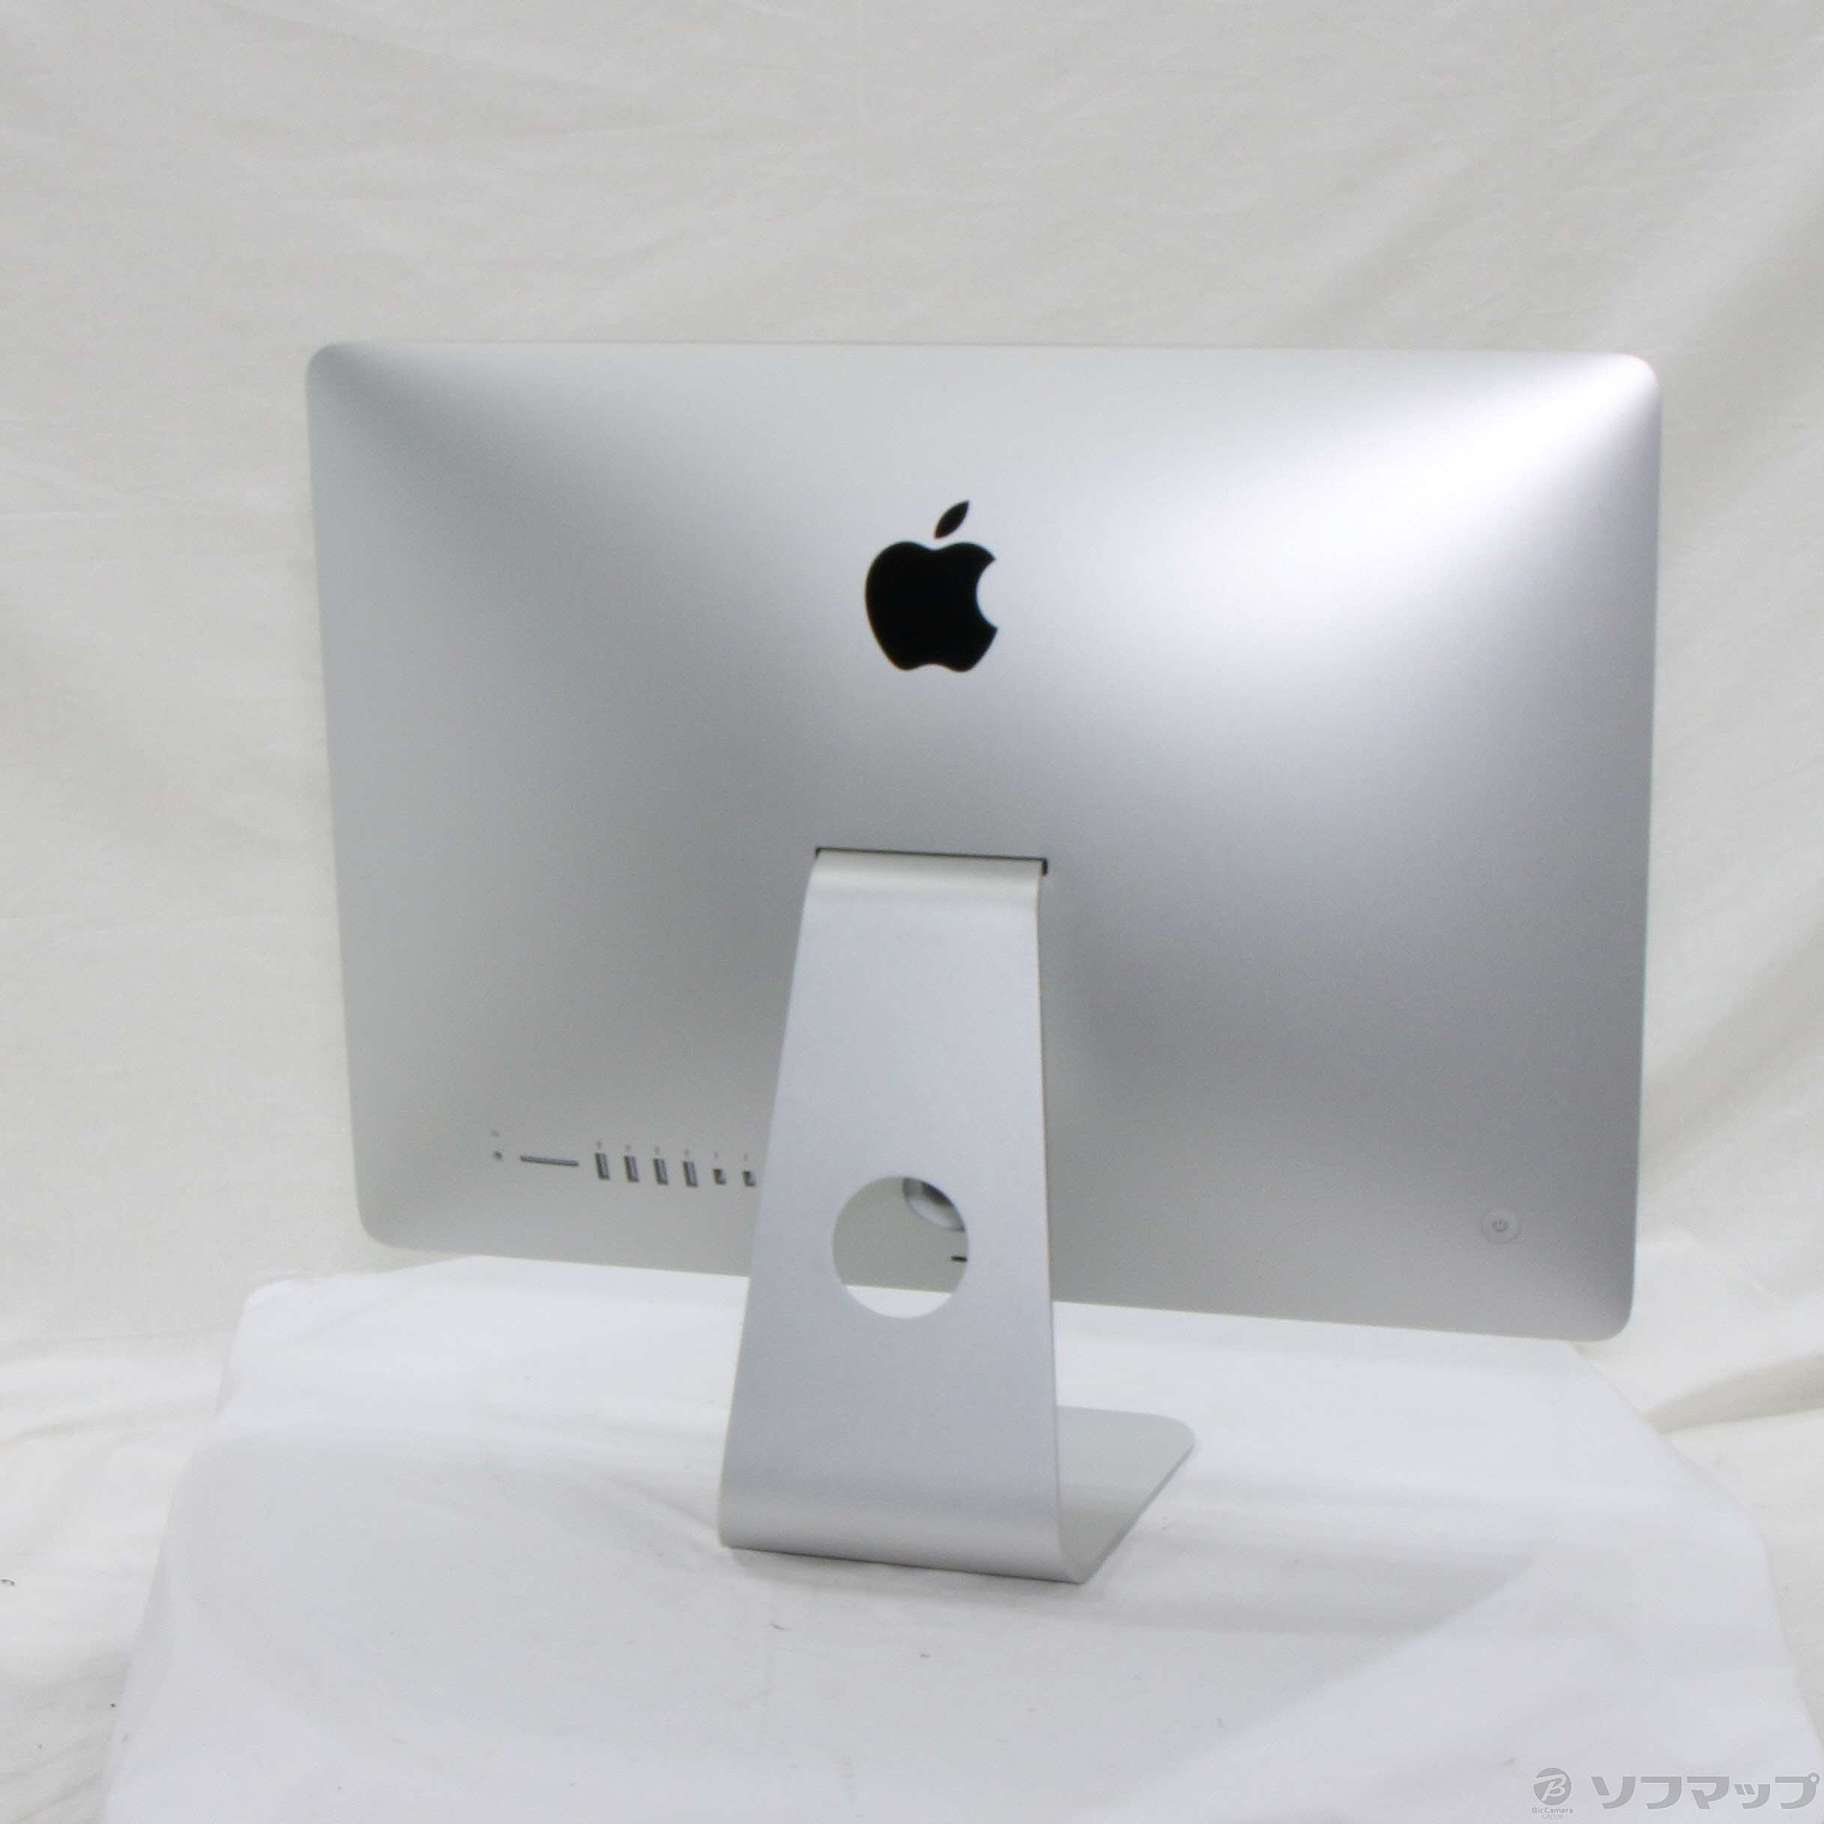 iMac（21.5-inch,Late 2013）ME086J/A ④ | angeloawards.com